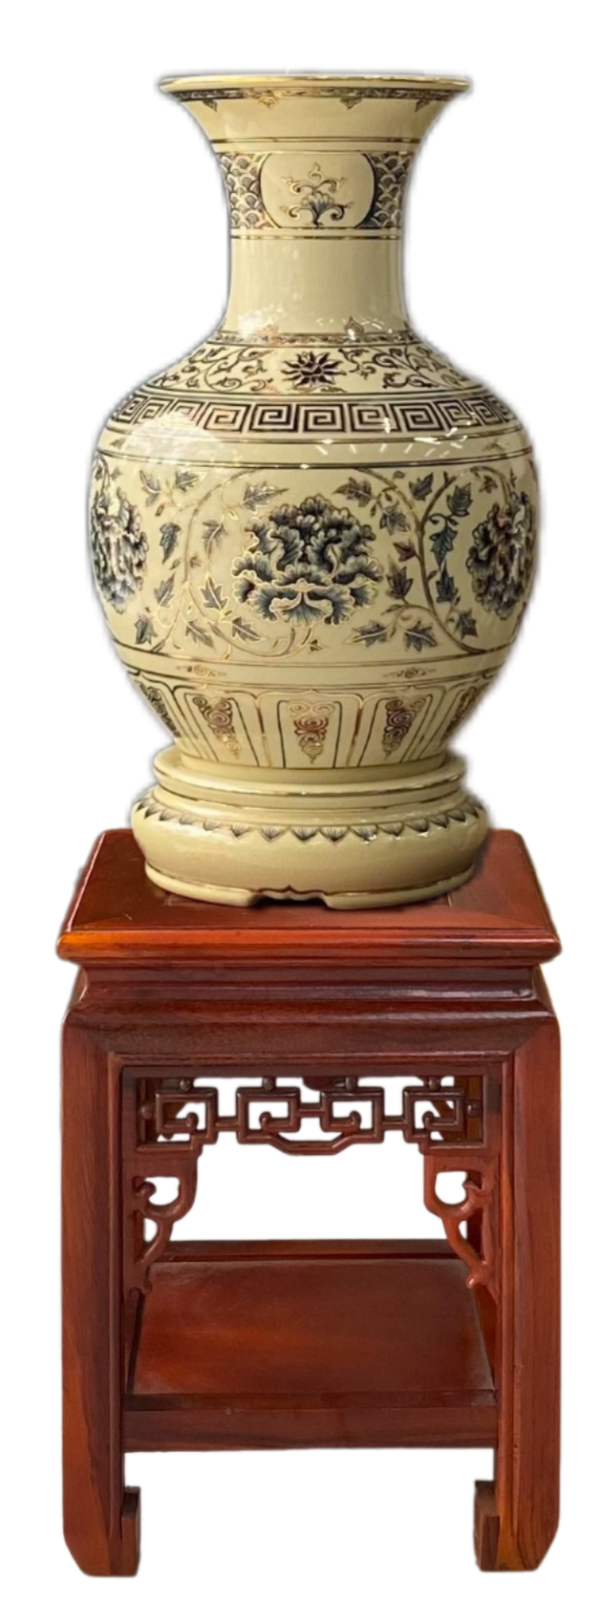 Bình Phú Quý gốm Chu Đậu, hoạ tiết hoa Phù Dung vẽ viền vàng 24K, cao 50cm